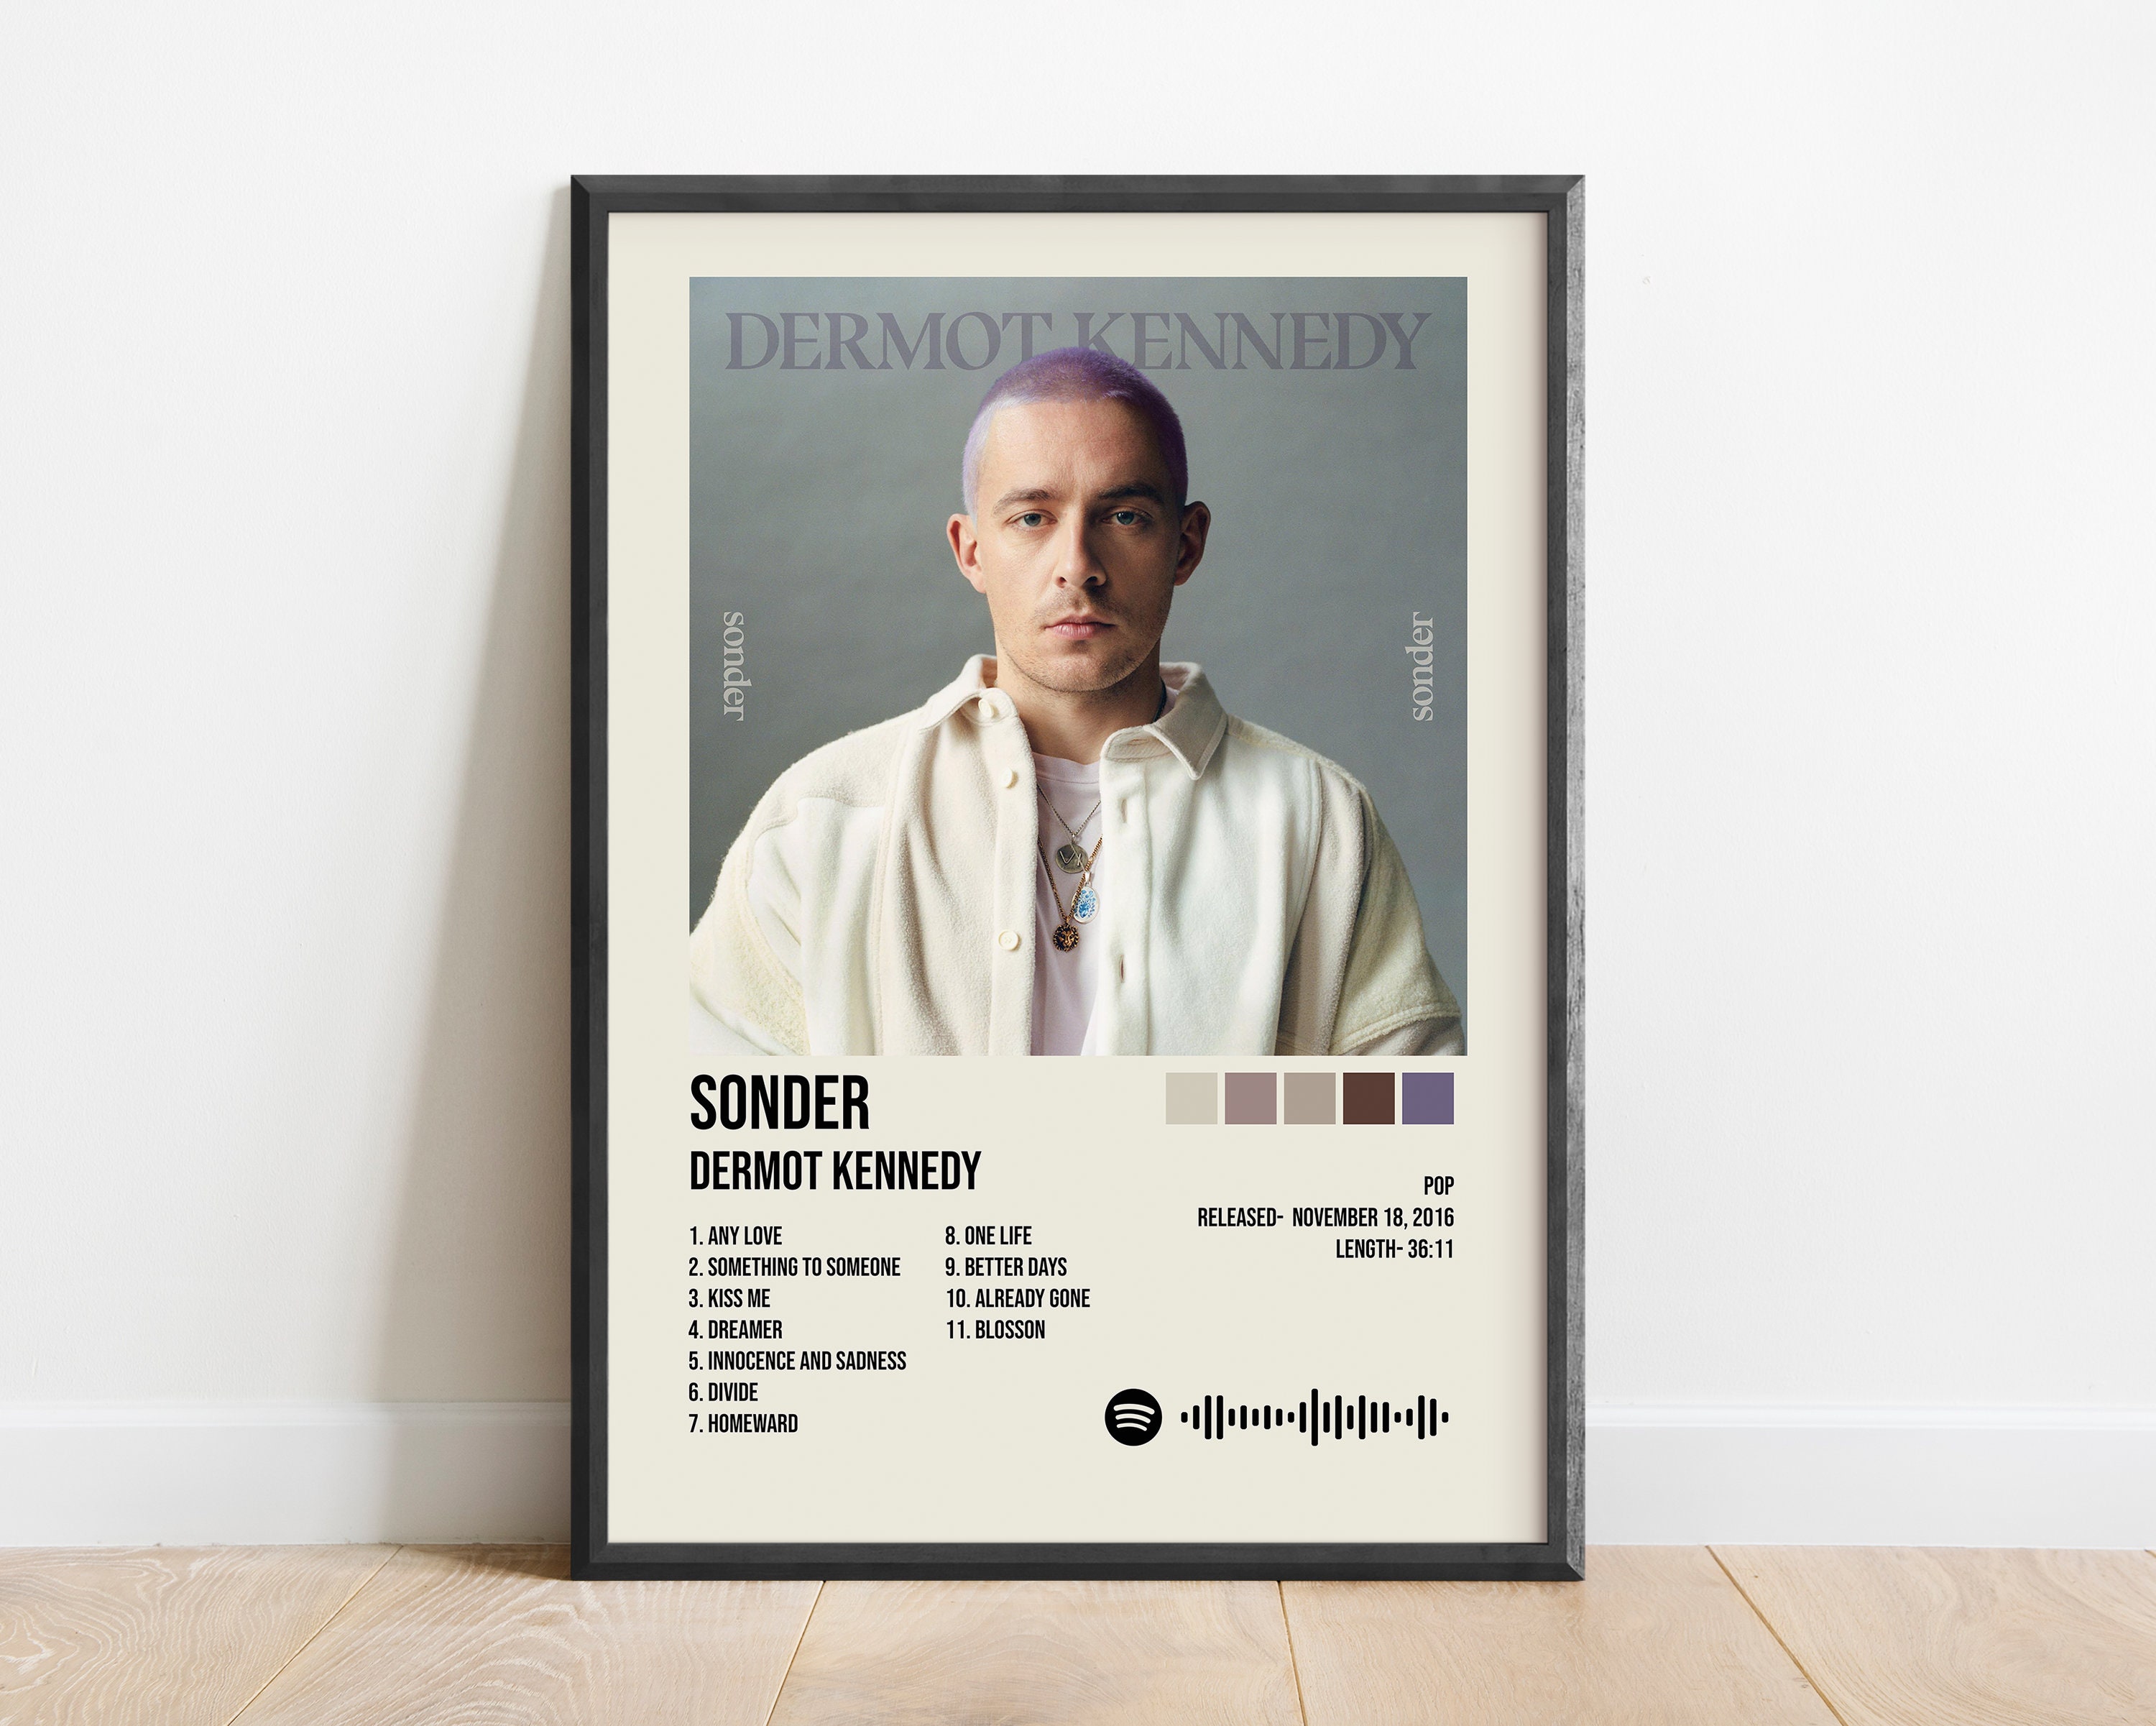 Dermot Kennedy Poster | Sonder Album | Dermot Kennedy Playlist | Album ...